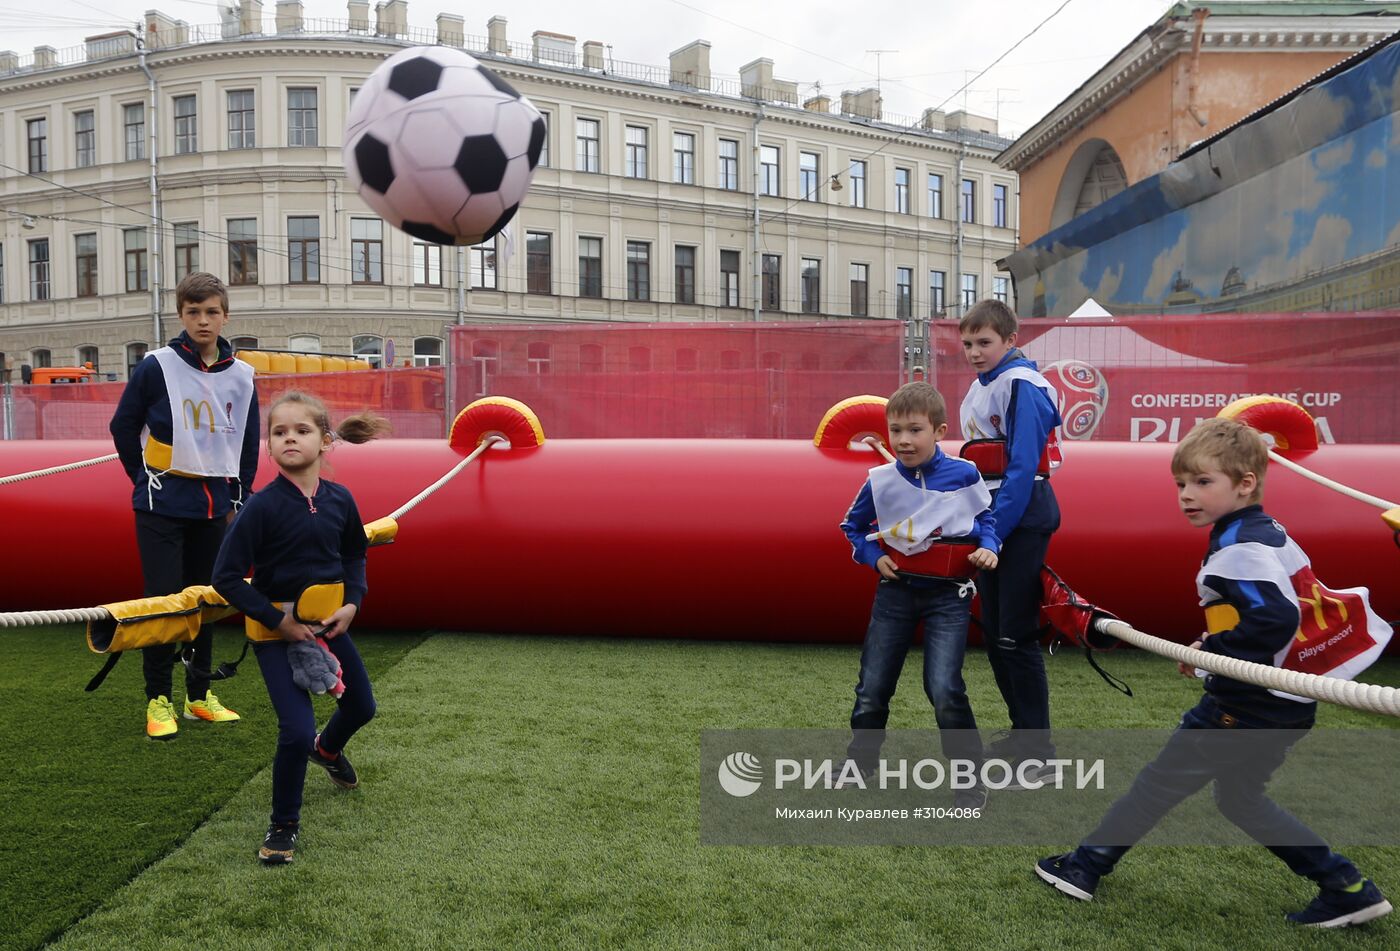 Открытие Парка Кубка конфедераций 2017 в Санкт-Петербурге